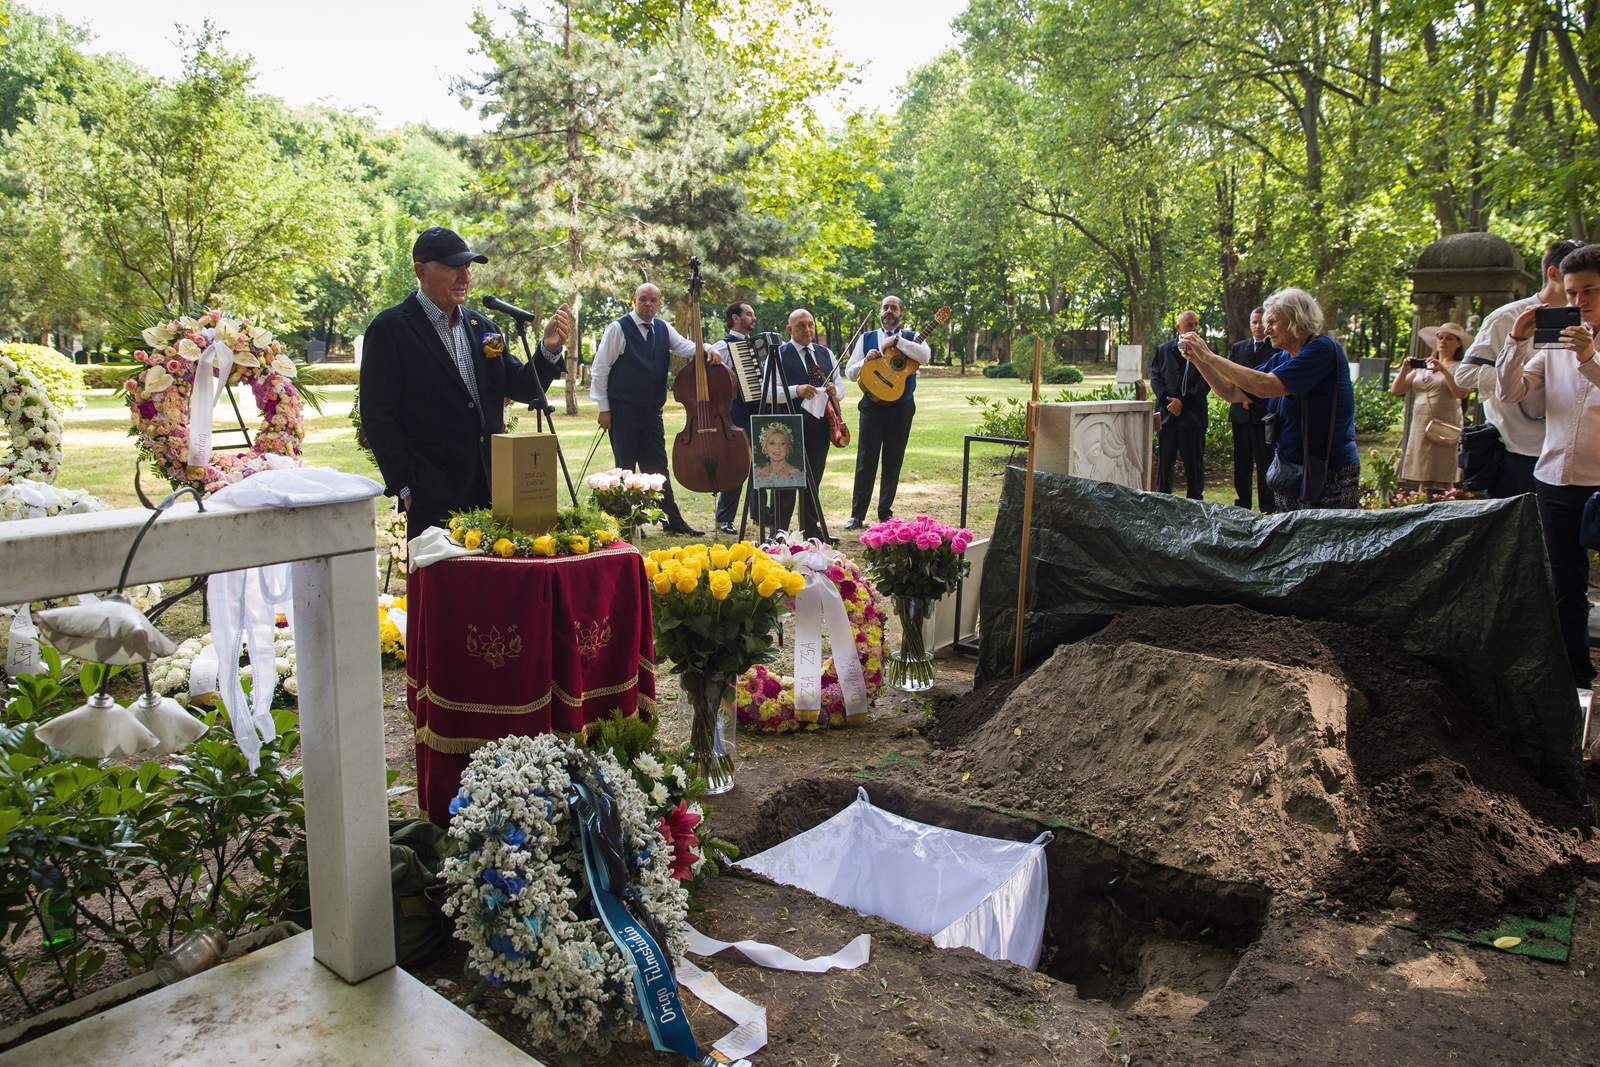 تم دفن رماد زازسا غابور يوم الثلاثاء في مقبرة شارع فيومي في بودابست ، بعد حوالي خمس سنوات من وفاتها.